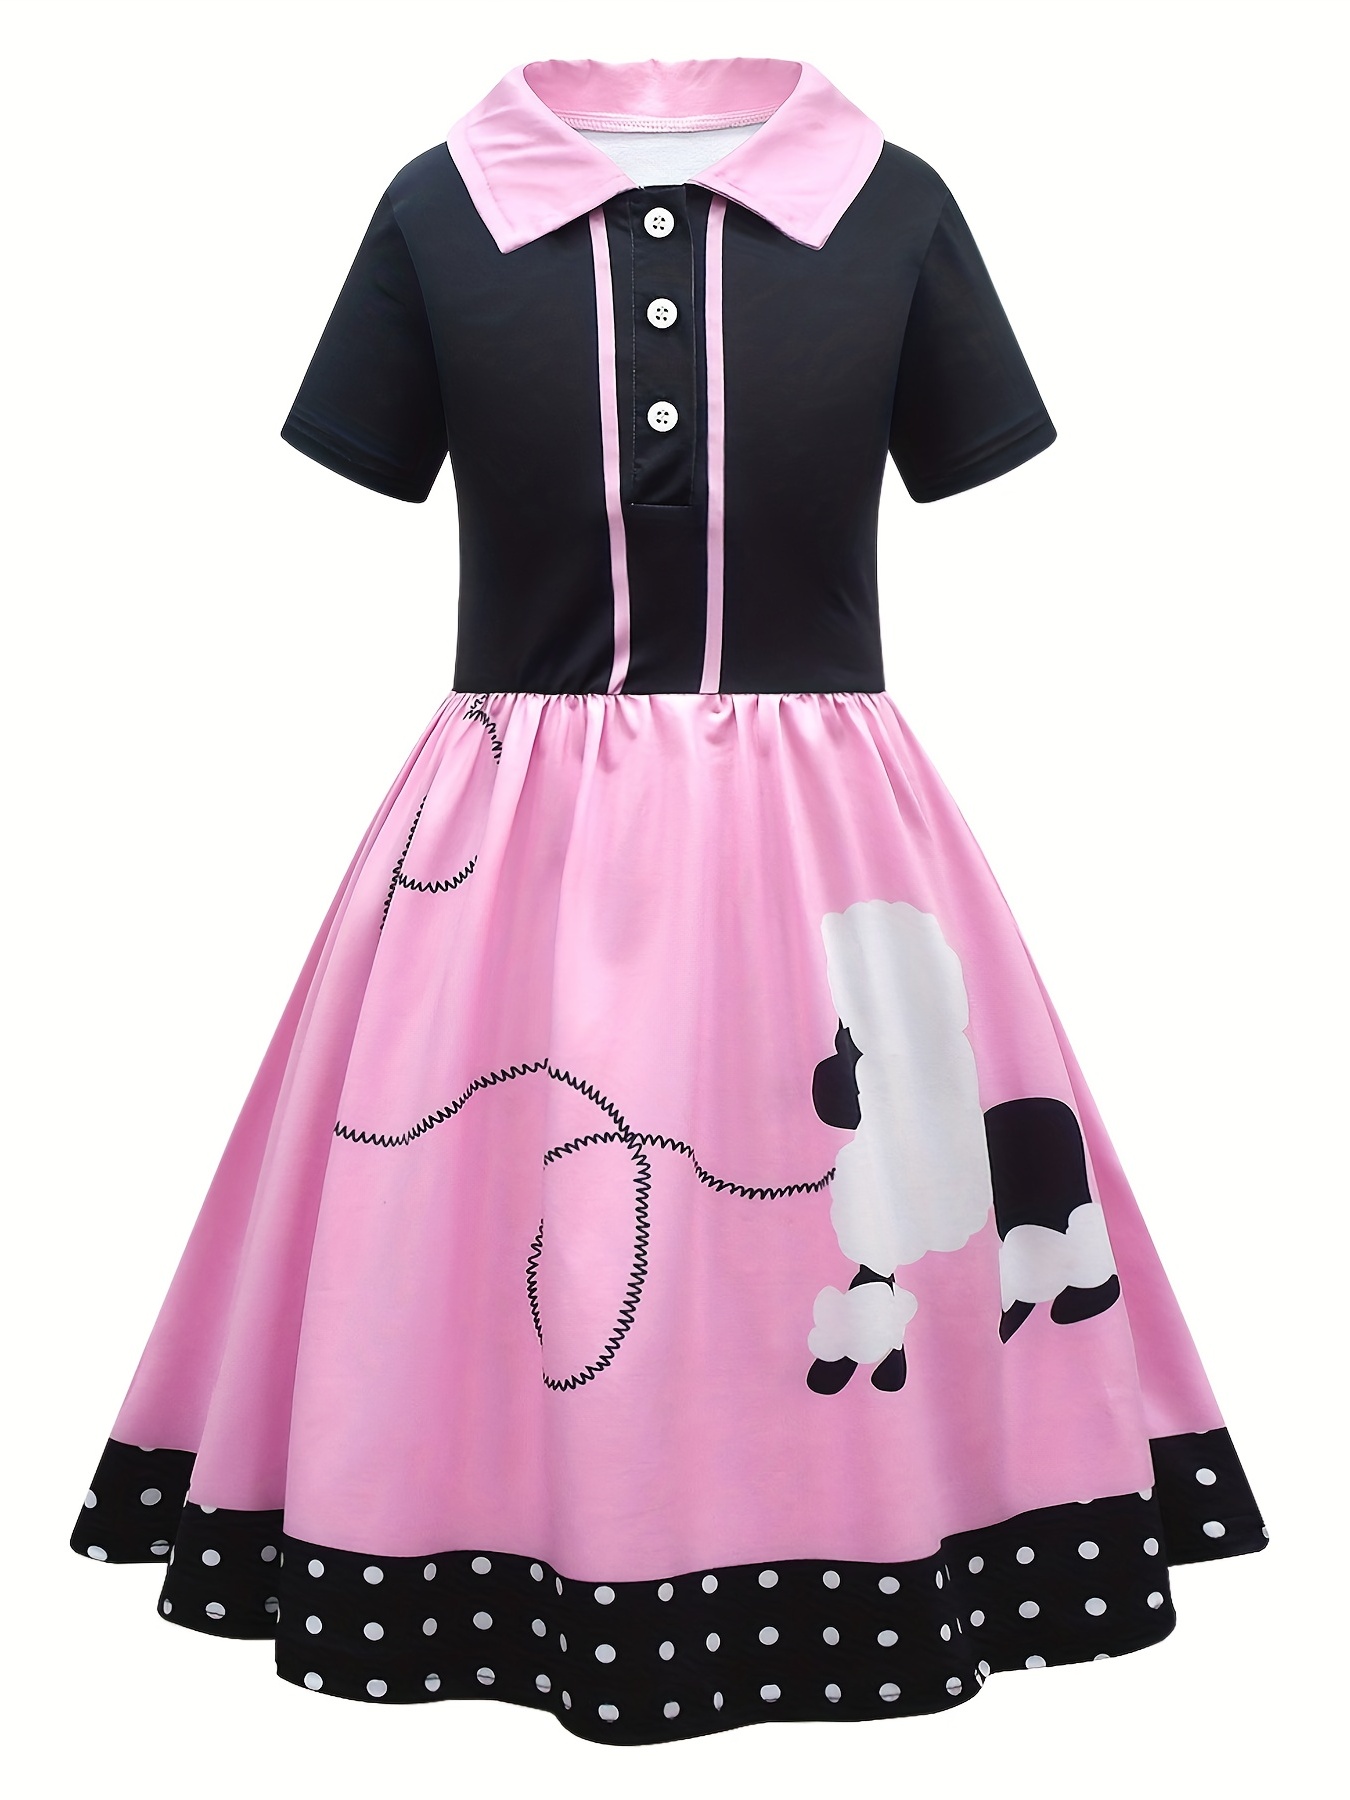 ‘50s Girl Costume Kit